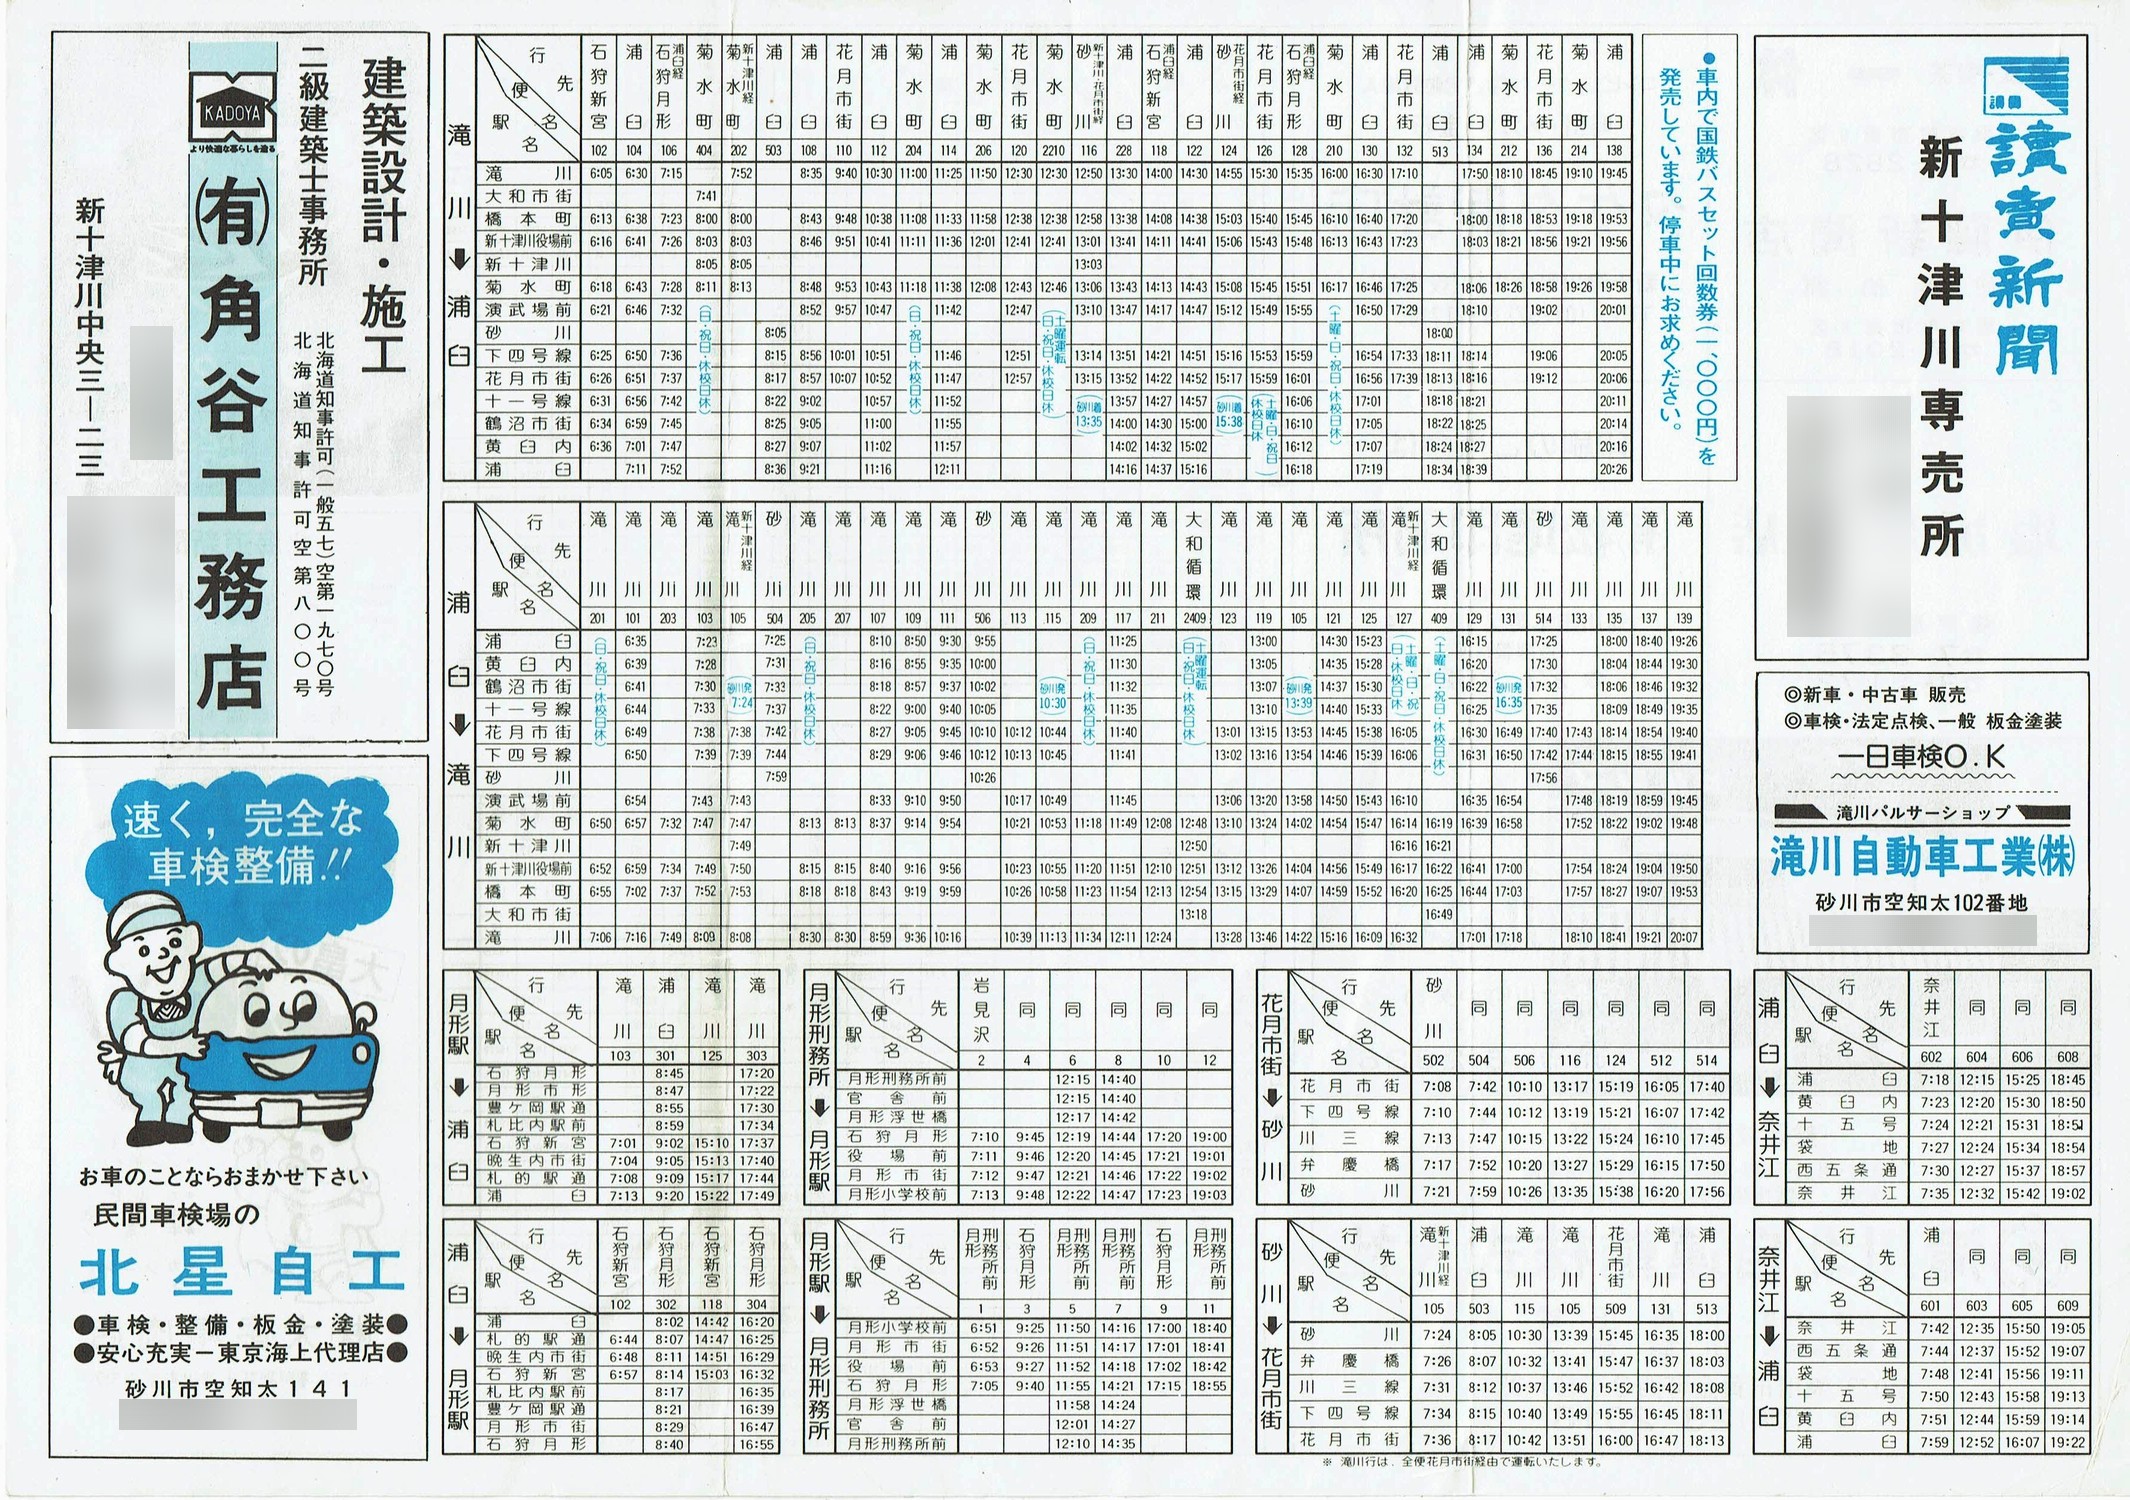 1985-05-27改正_国鉄バス_石狩線時刻表裏面